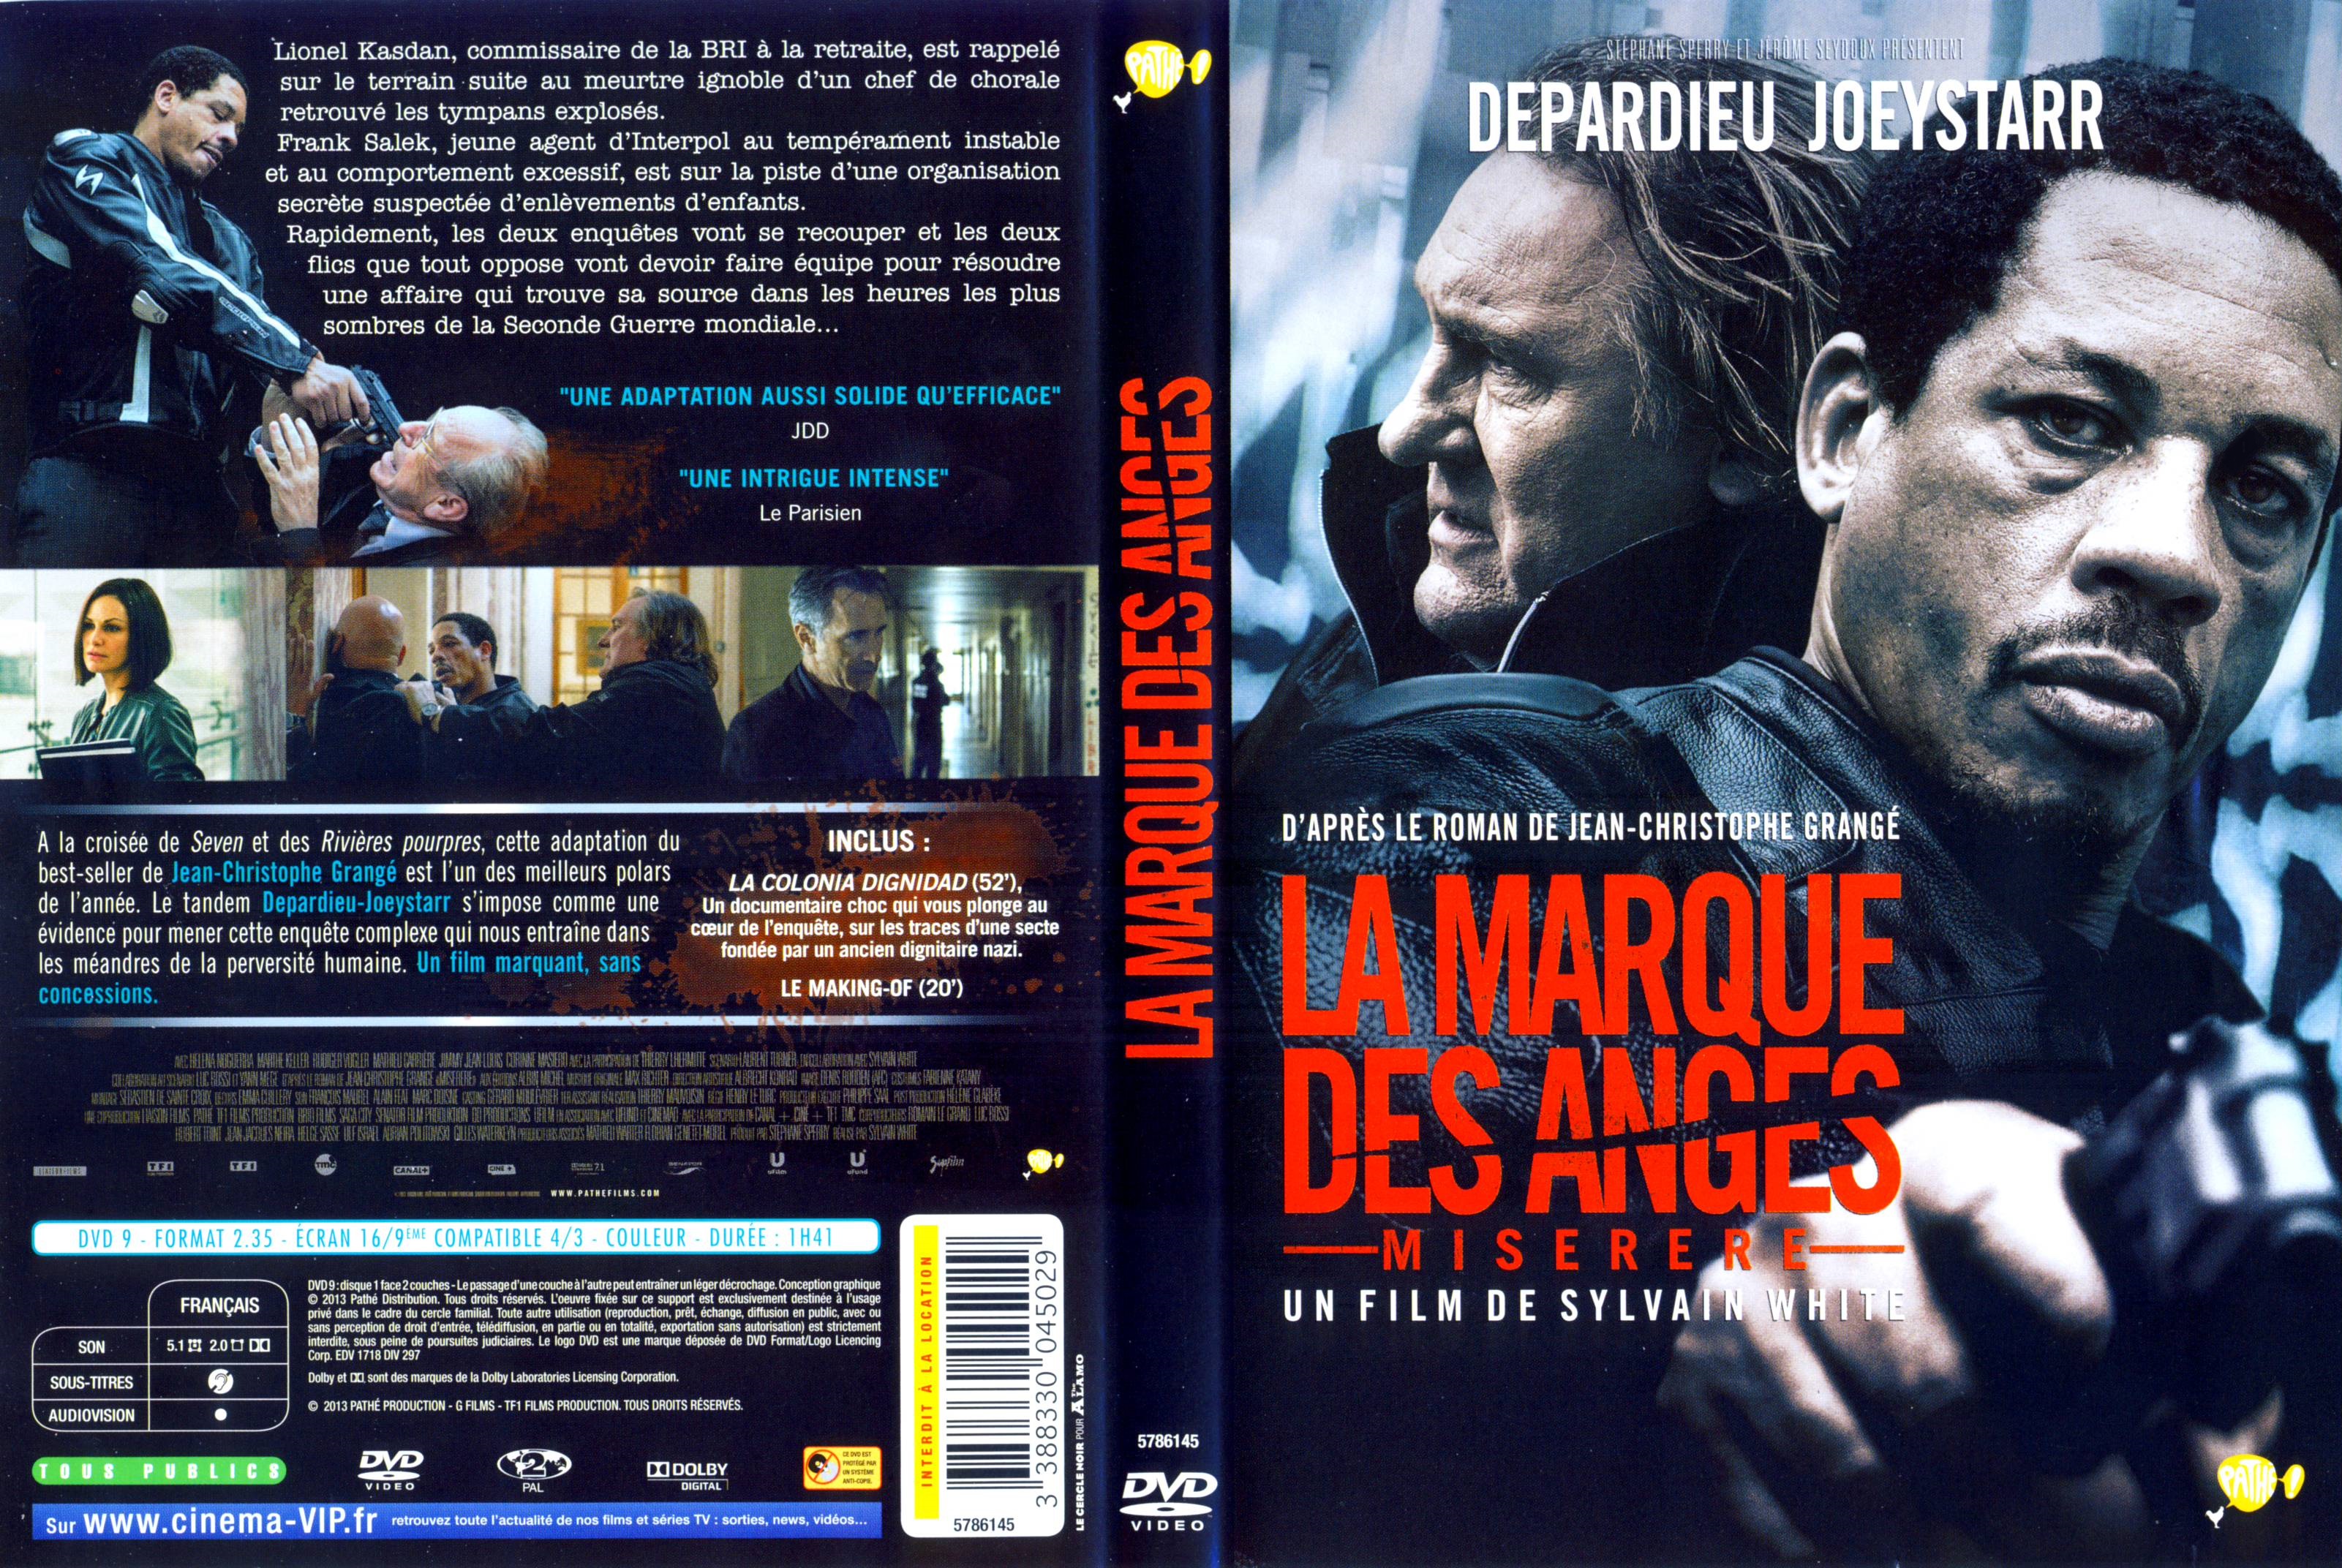 Jaquette DVD La Marque des anges Miserere